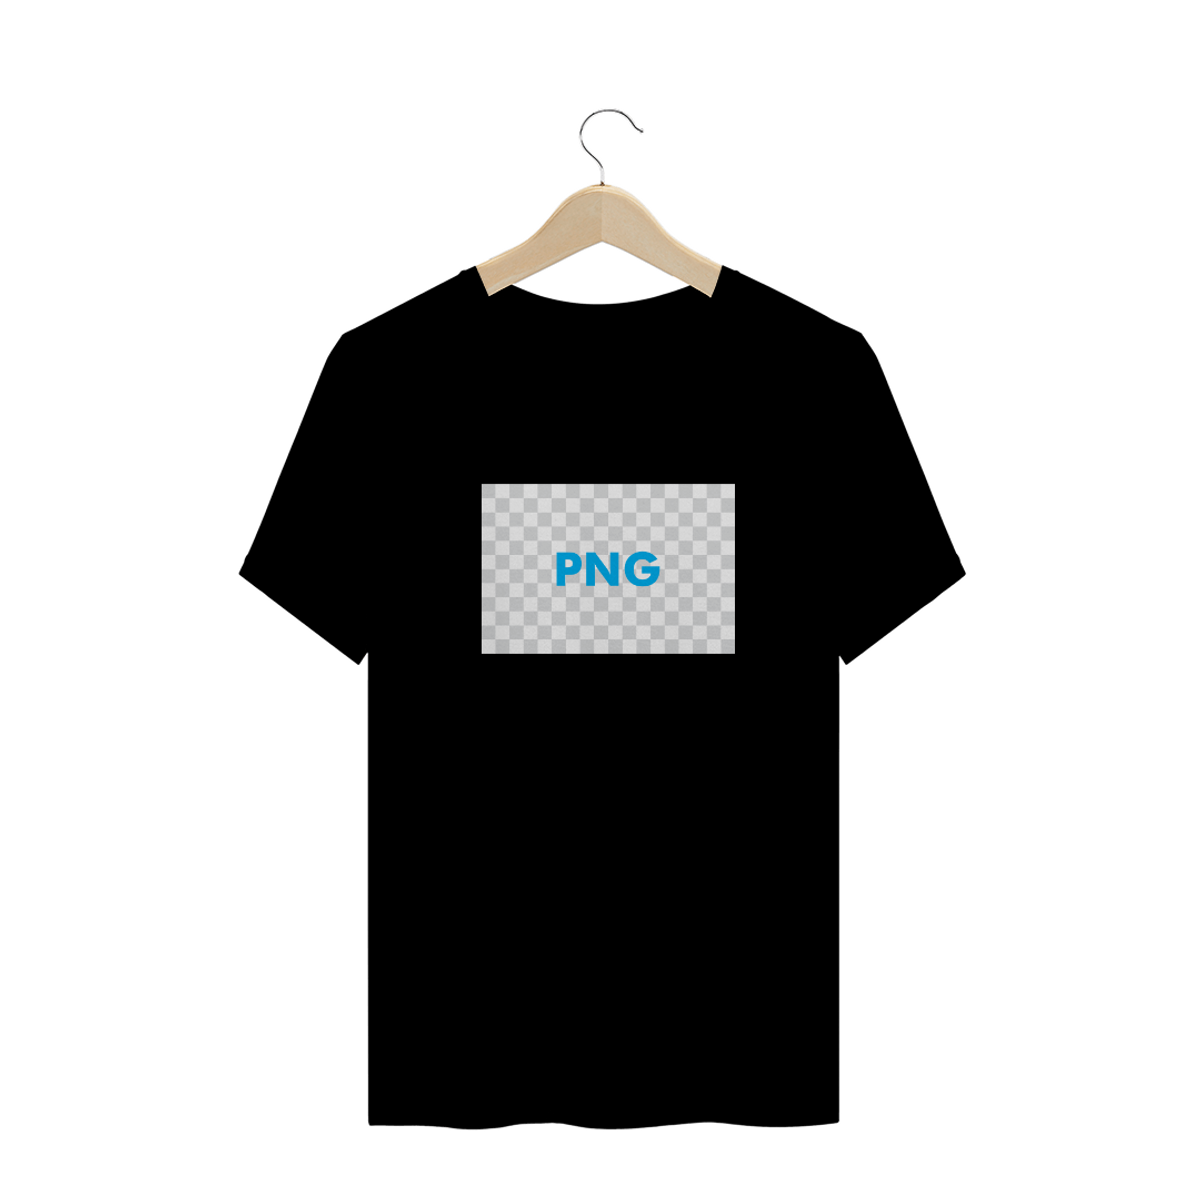 Nome do produto: Camiseta PNG - (prime)